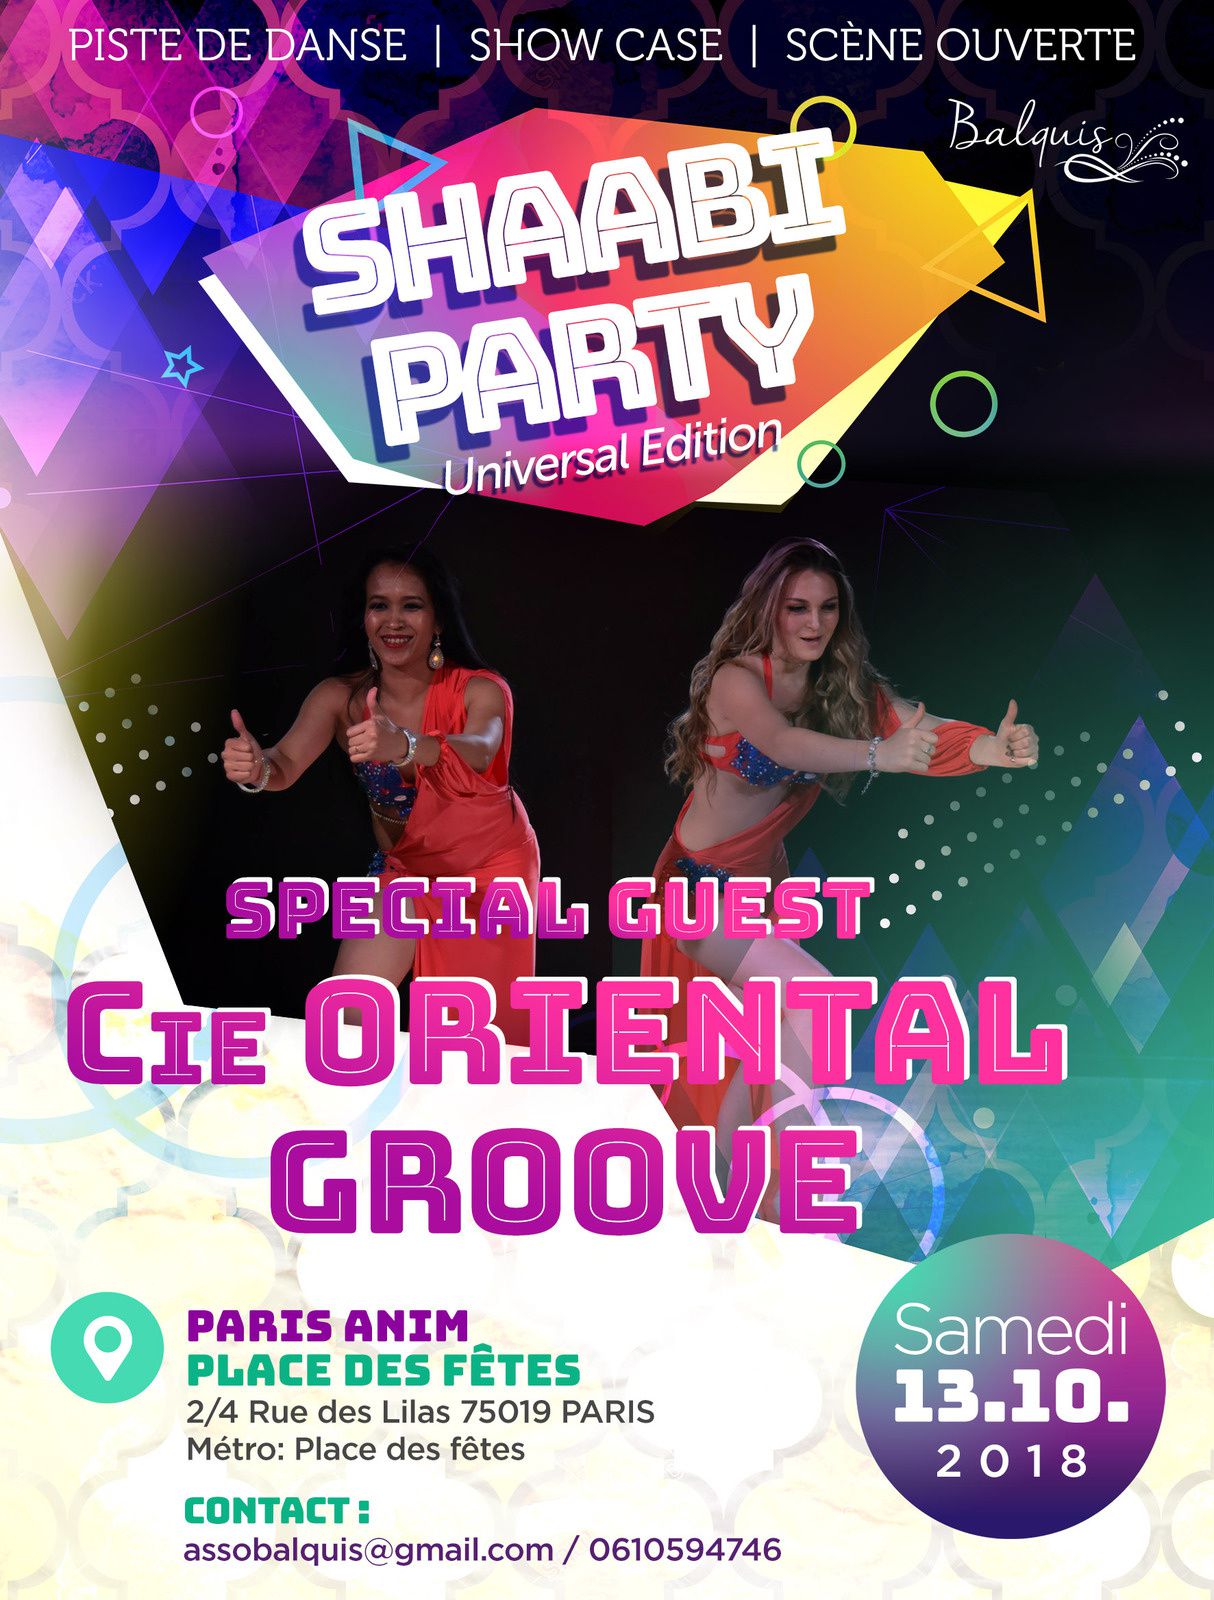 La Compagnie Oriental Groove, danseuses orientale danseuses du ventre à Paris pour le spectacle SHAABI PARTY